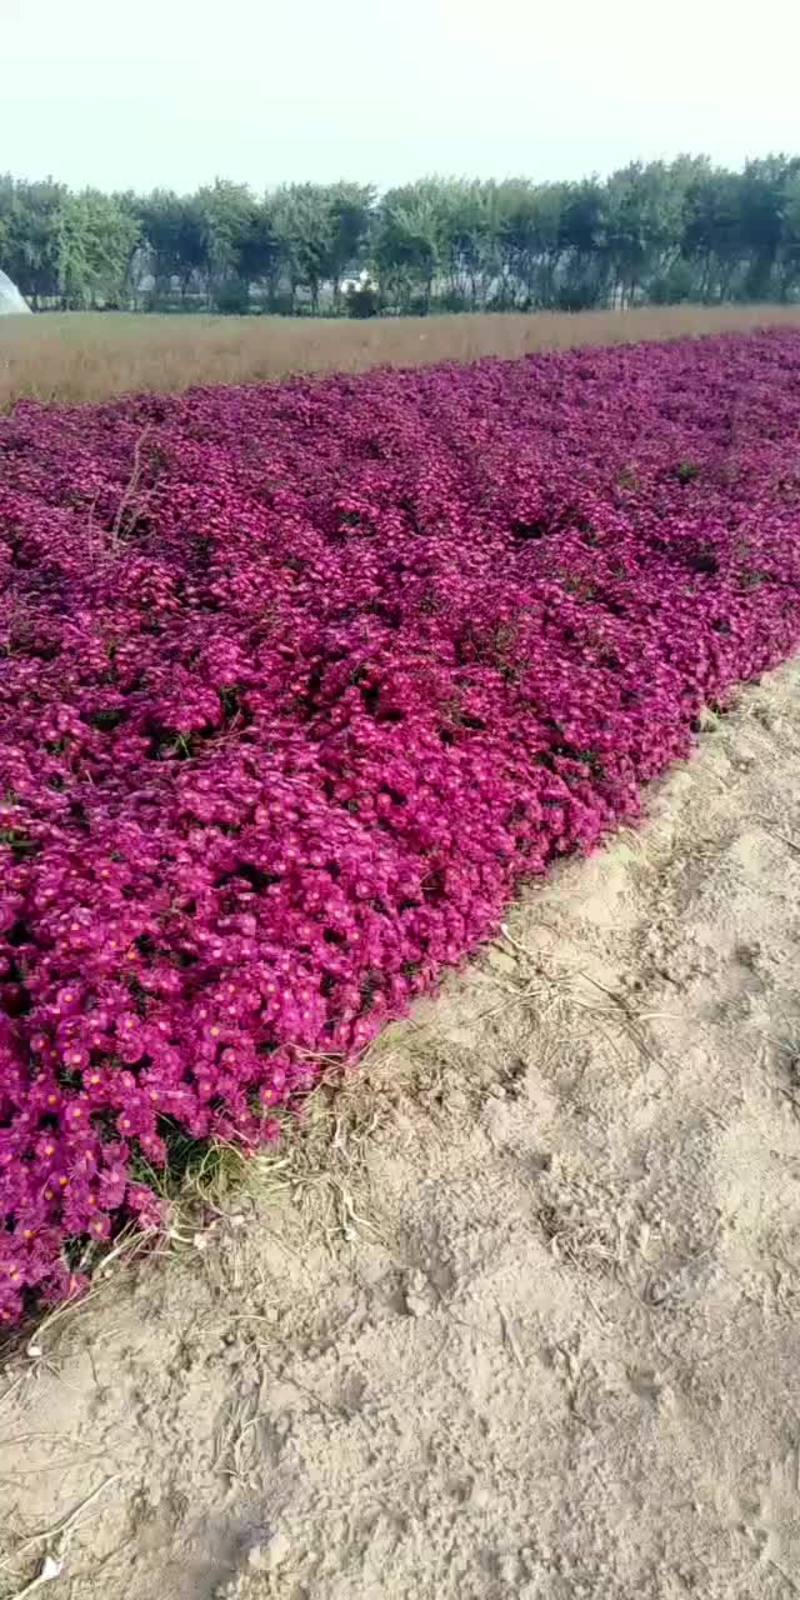 优质荷兰菊，3种颜色，过冬耐寒抗旱多年生宿根花卉。大量现